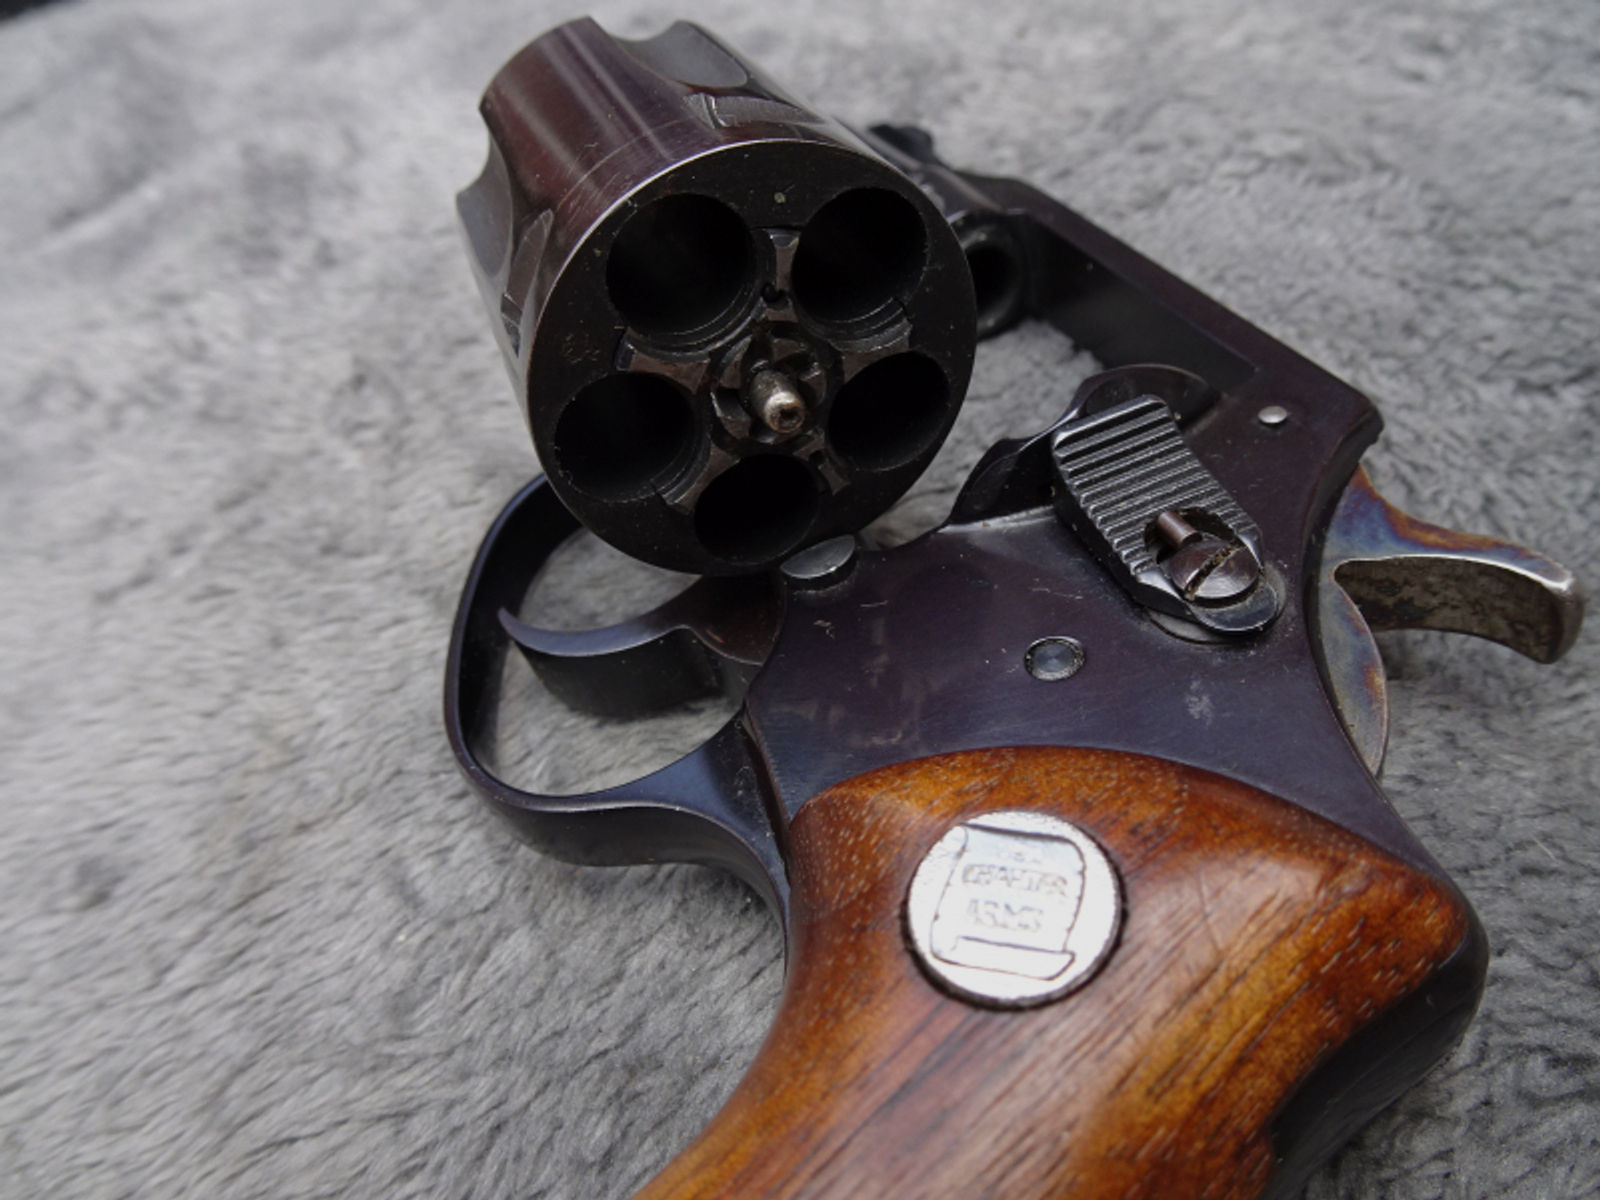 Revolver Charter Arms 2" Mod.1382 .38 Spezial